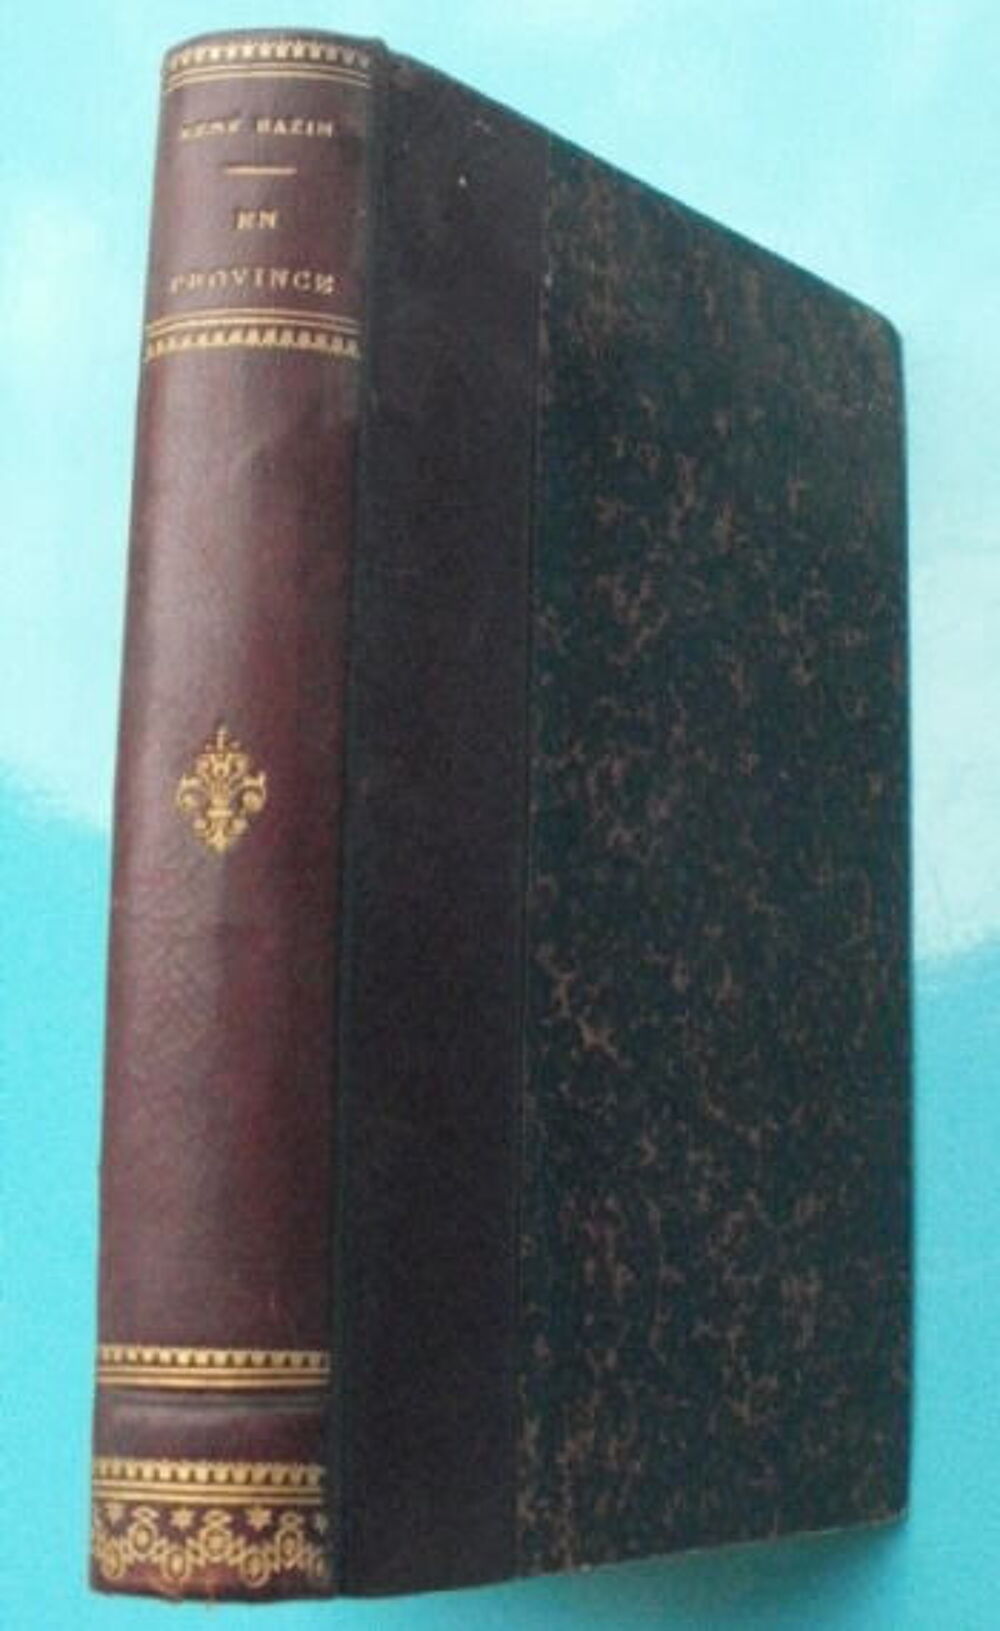 Ren&eacute; BAZIN En province, livre reli&eacute;, CALMANN LEVY - 1896 Livres et BD